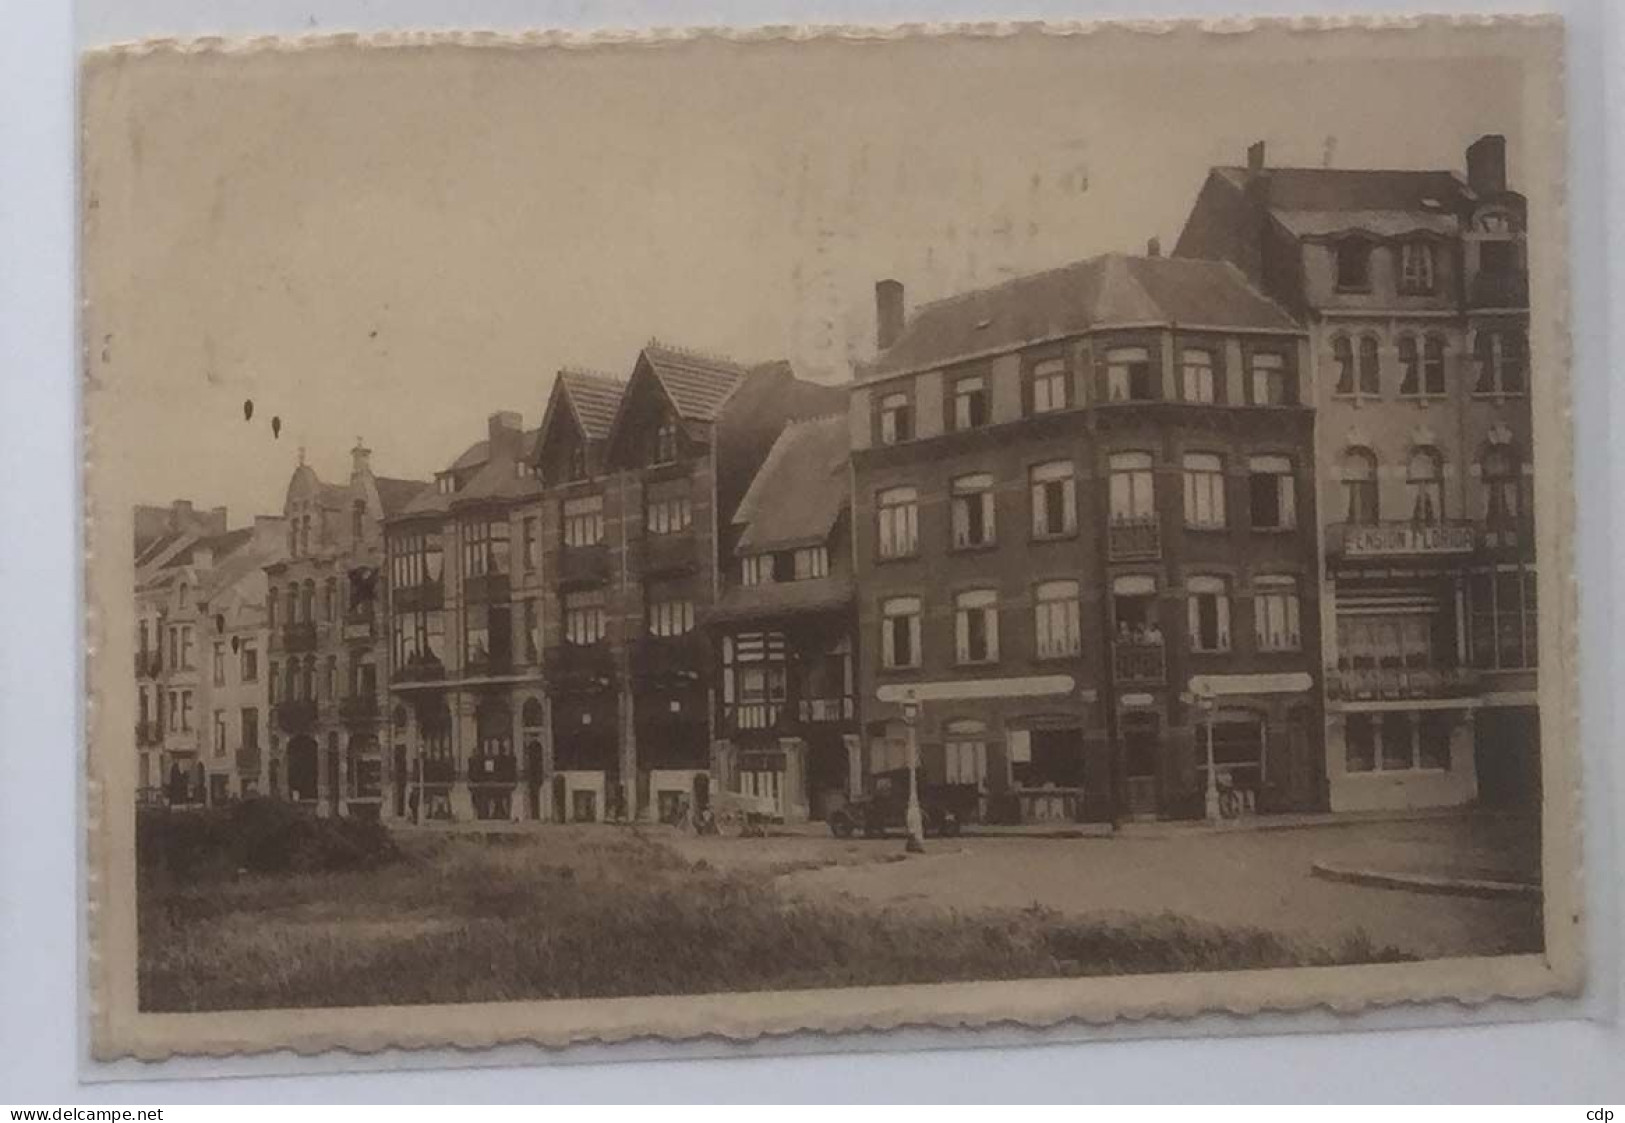 Cpa Mariakerke   1937 - Oostende